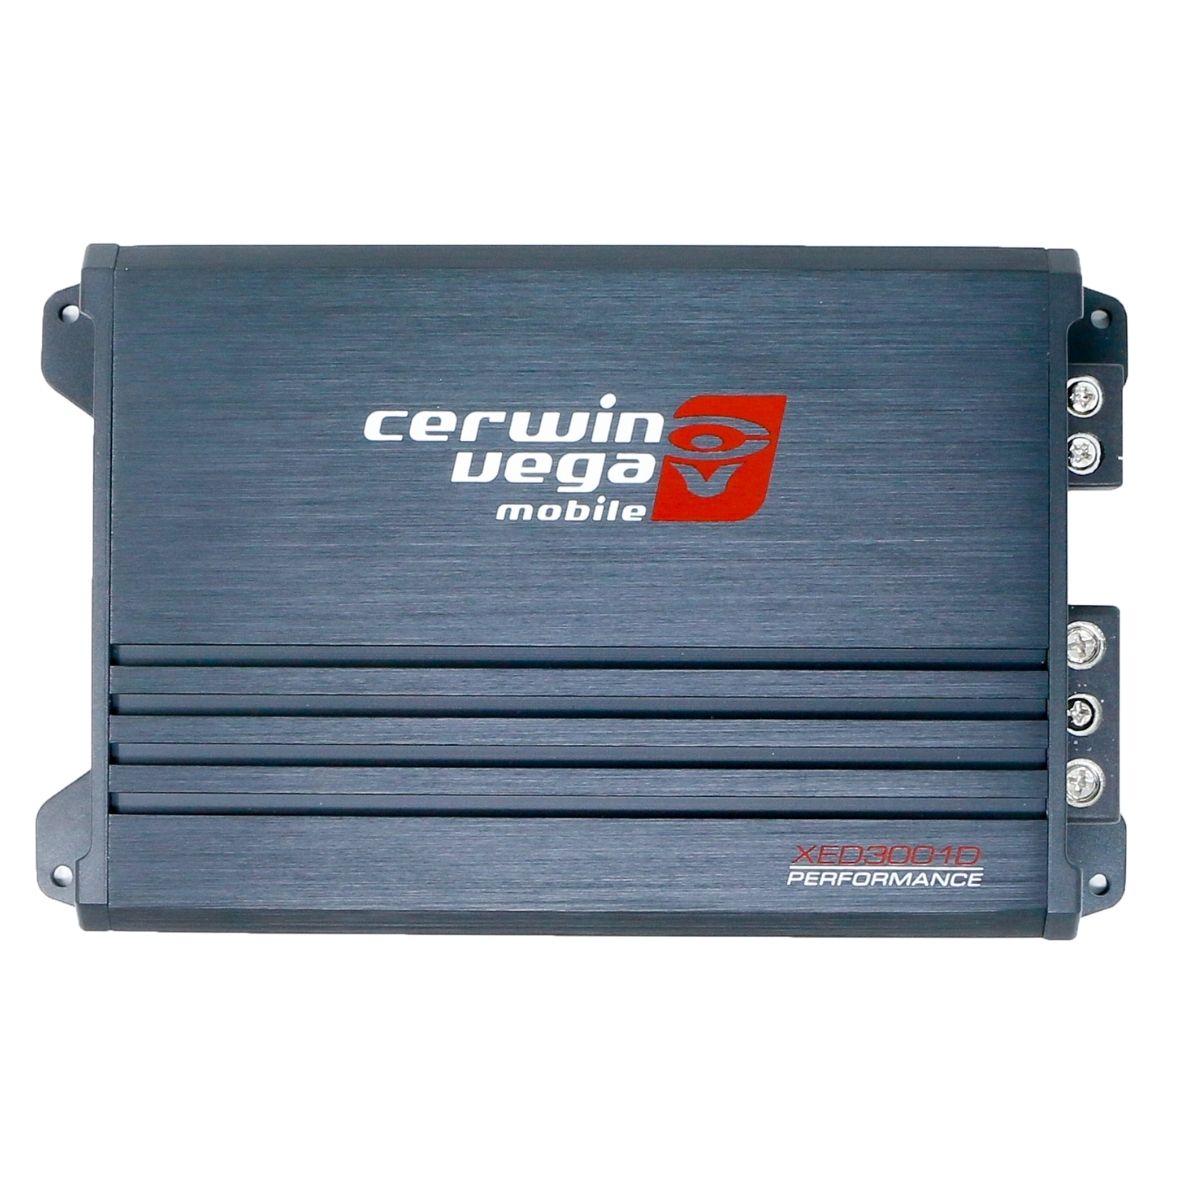 Cerwin Vega XED3001D 300W RMS Mono Amplifier